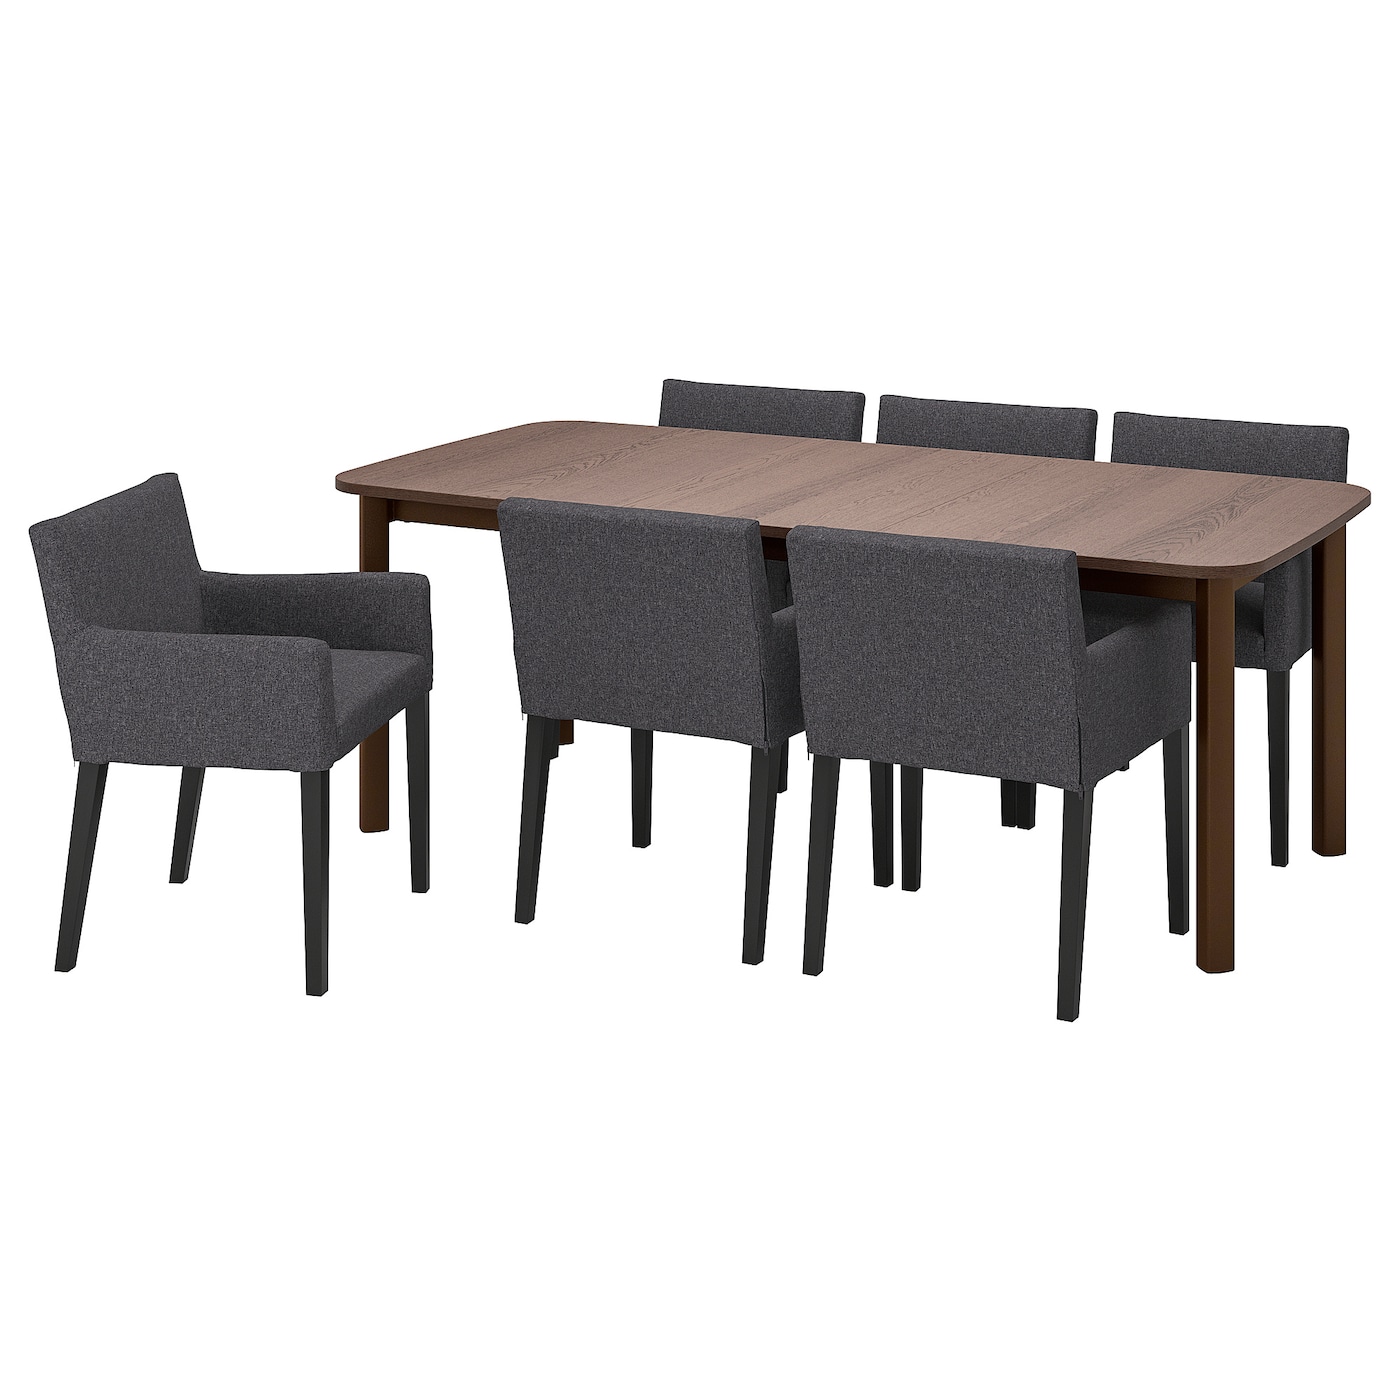 Стол и 6 стульев - STRANDTORP / MÅRENÄS IKEA/СТРАНДТОРП/МАРЕНЭС ИКЕА, 205х95х75 см, коричневый/серый